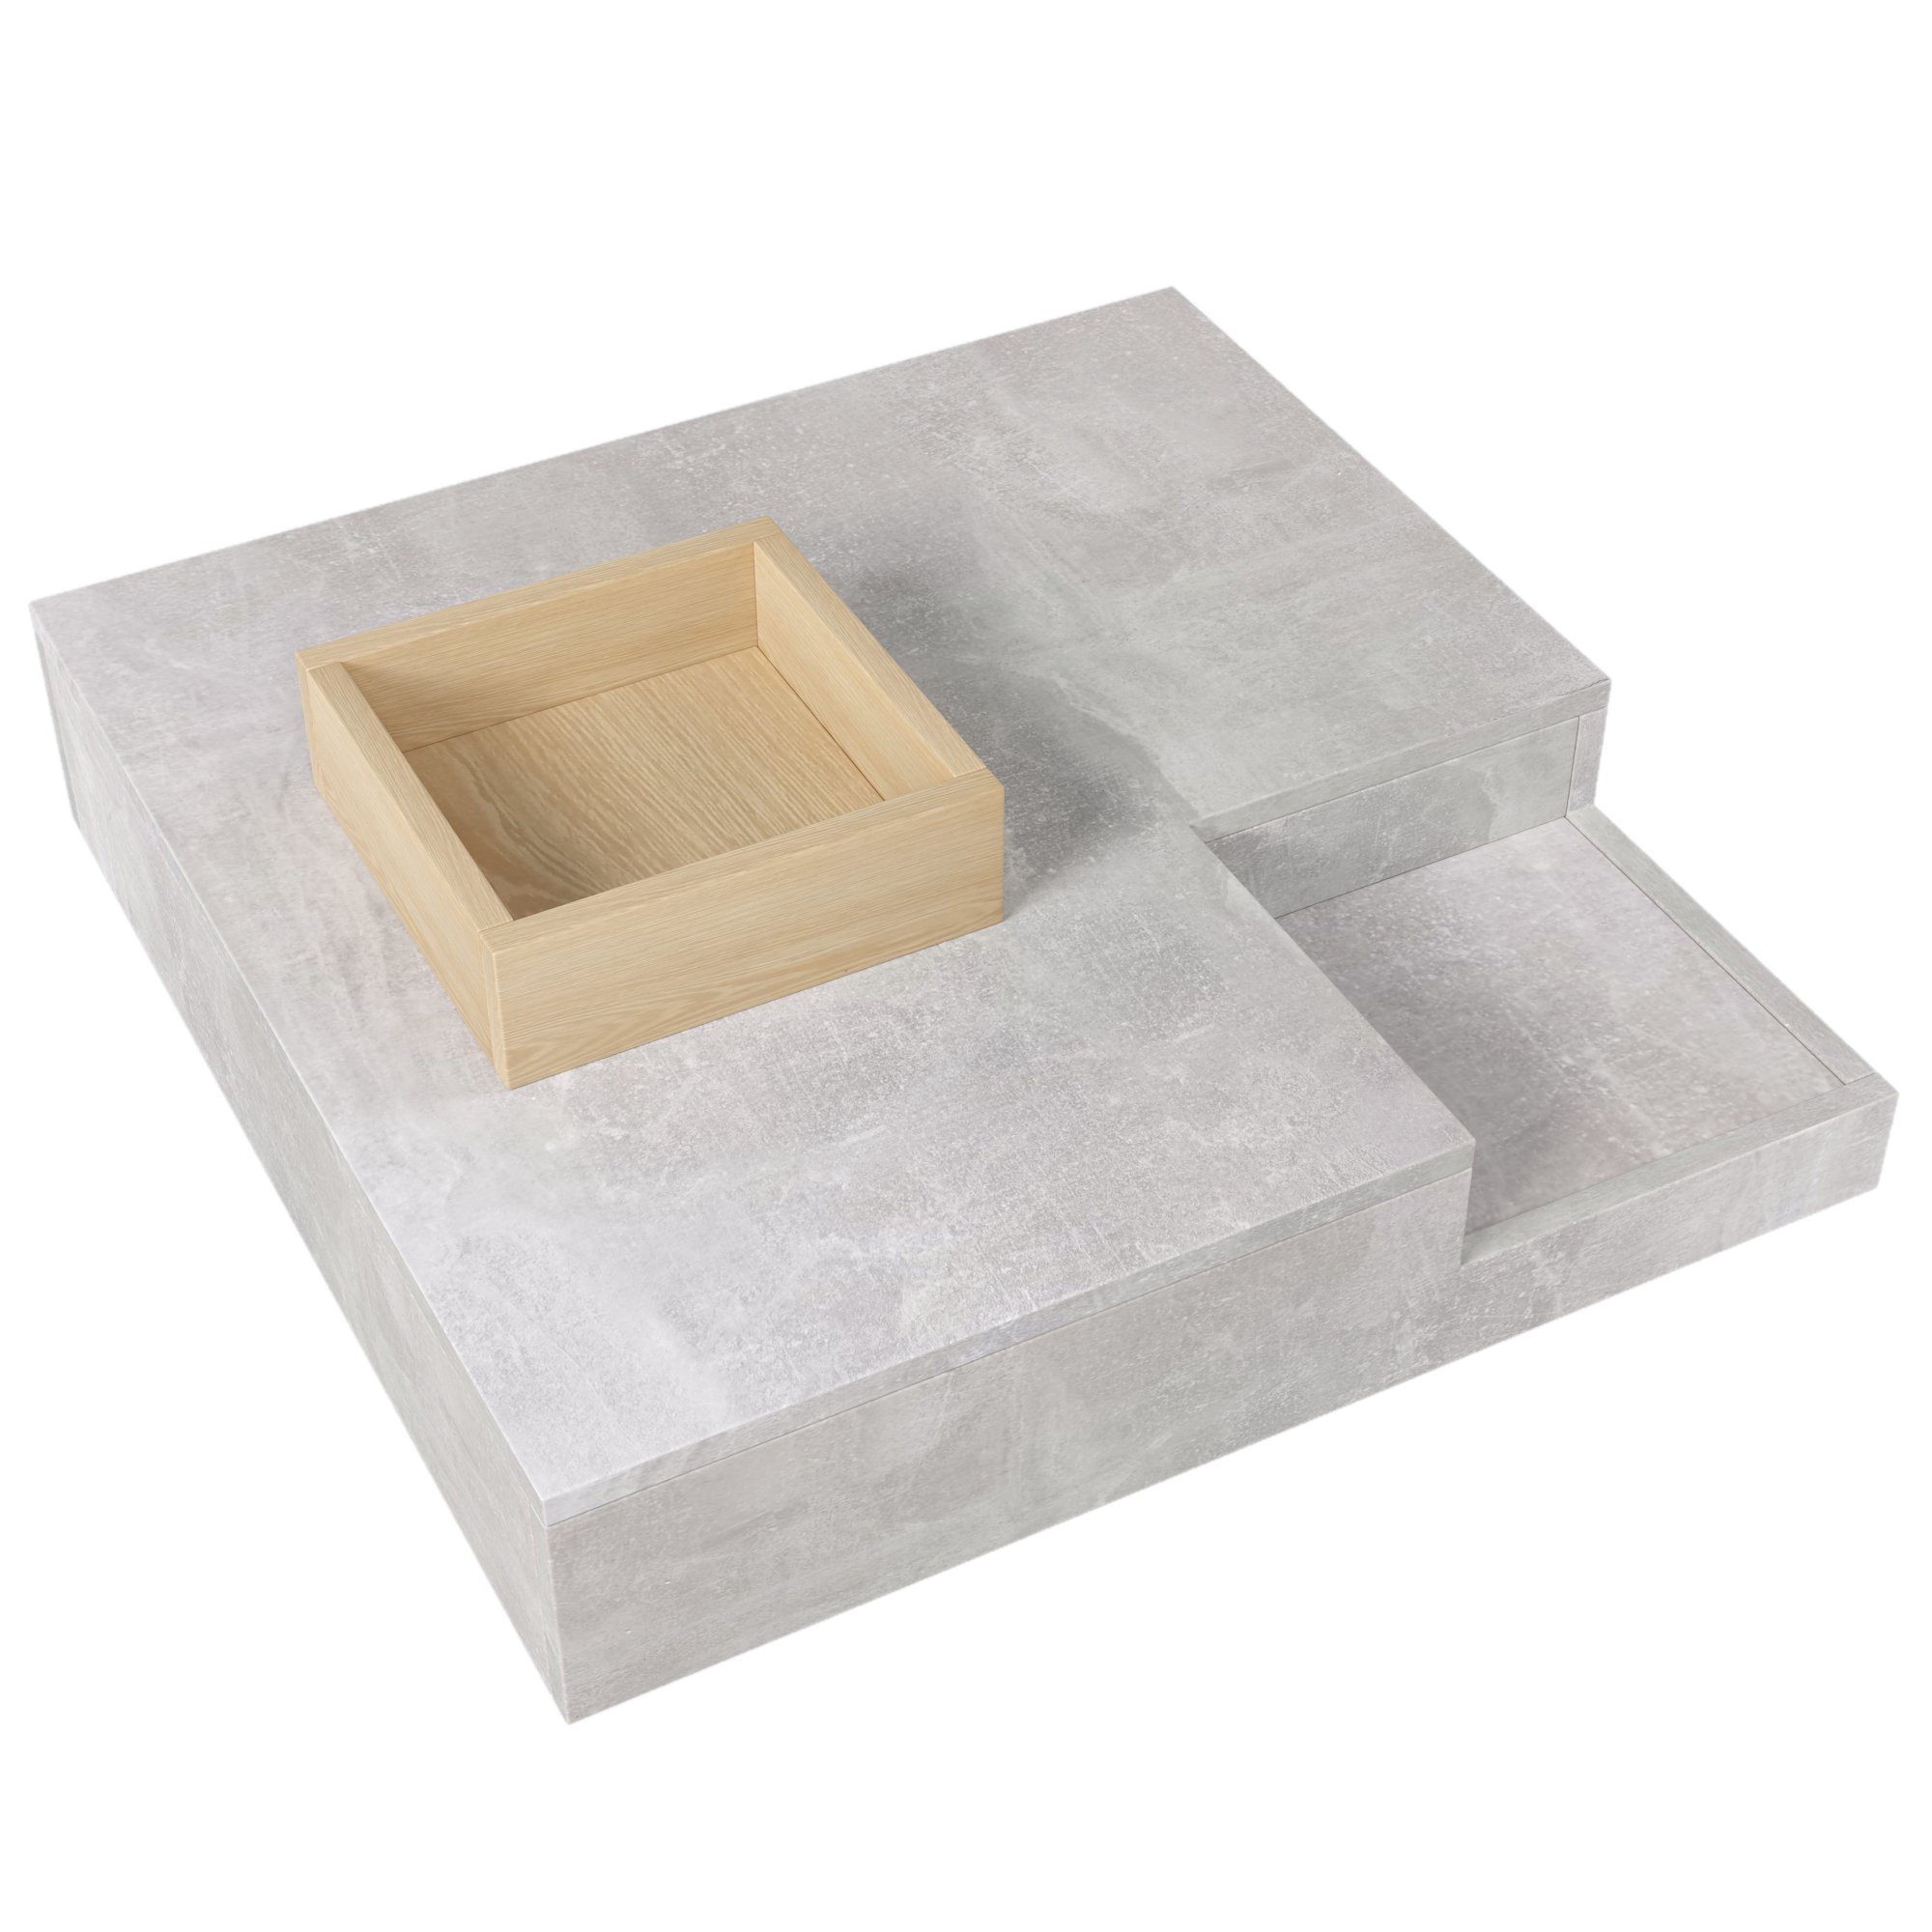 Wohnzimmertisch OKWISH Beistelltisch herausnehmbarer Betongrau Couchtisch mit Aufbewahrungsbox, 72*72*30 cm. Holzfarbe, und